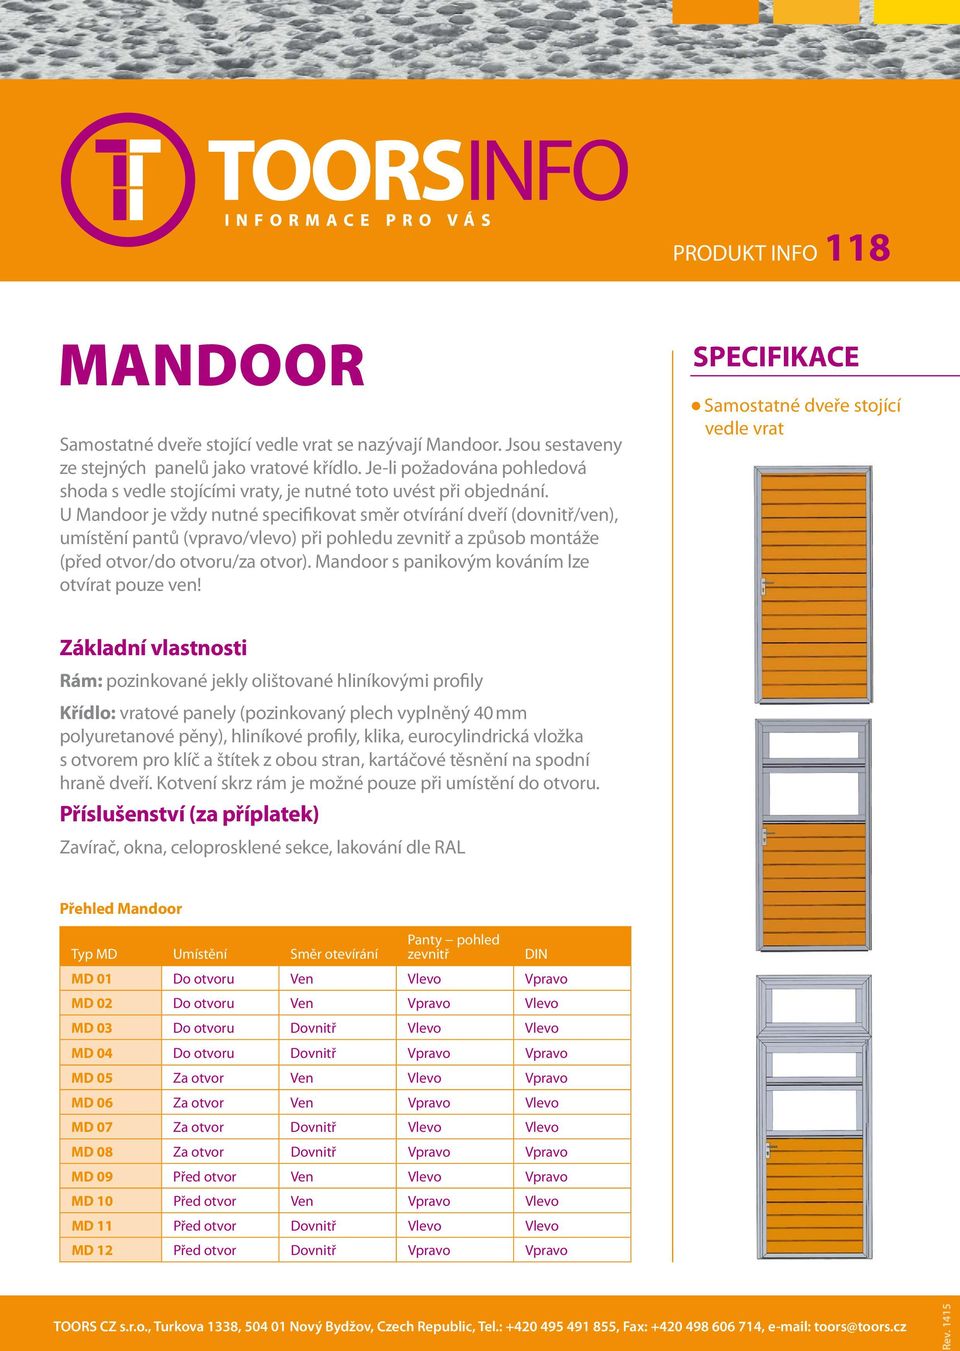 U Mandoor je vždy nutné specifikovat směr otvírání dveří (dovnitř/ven), umístění pantů (vpravo/vlevo) při pohledu zevnitř a způsob montáže (před otvor/do otvoru/za otvor).